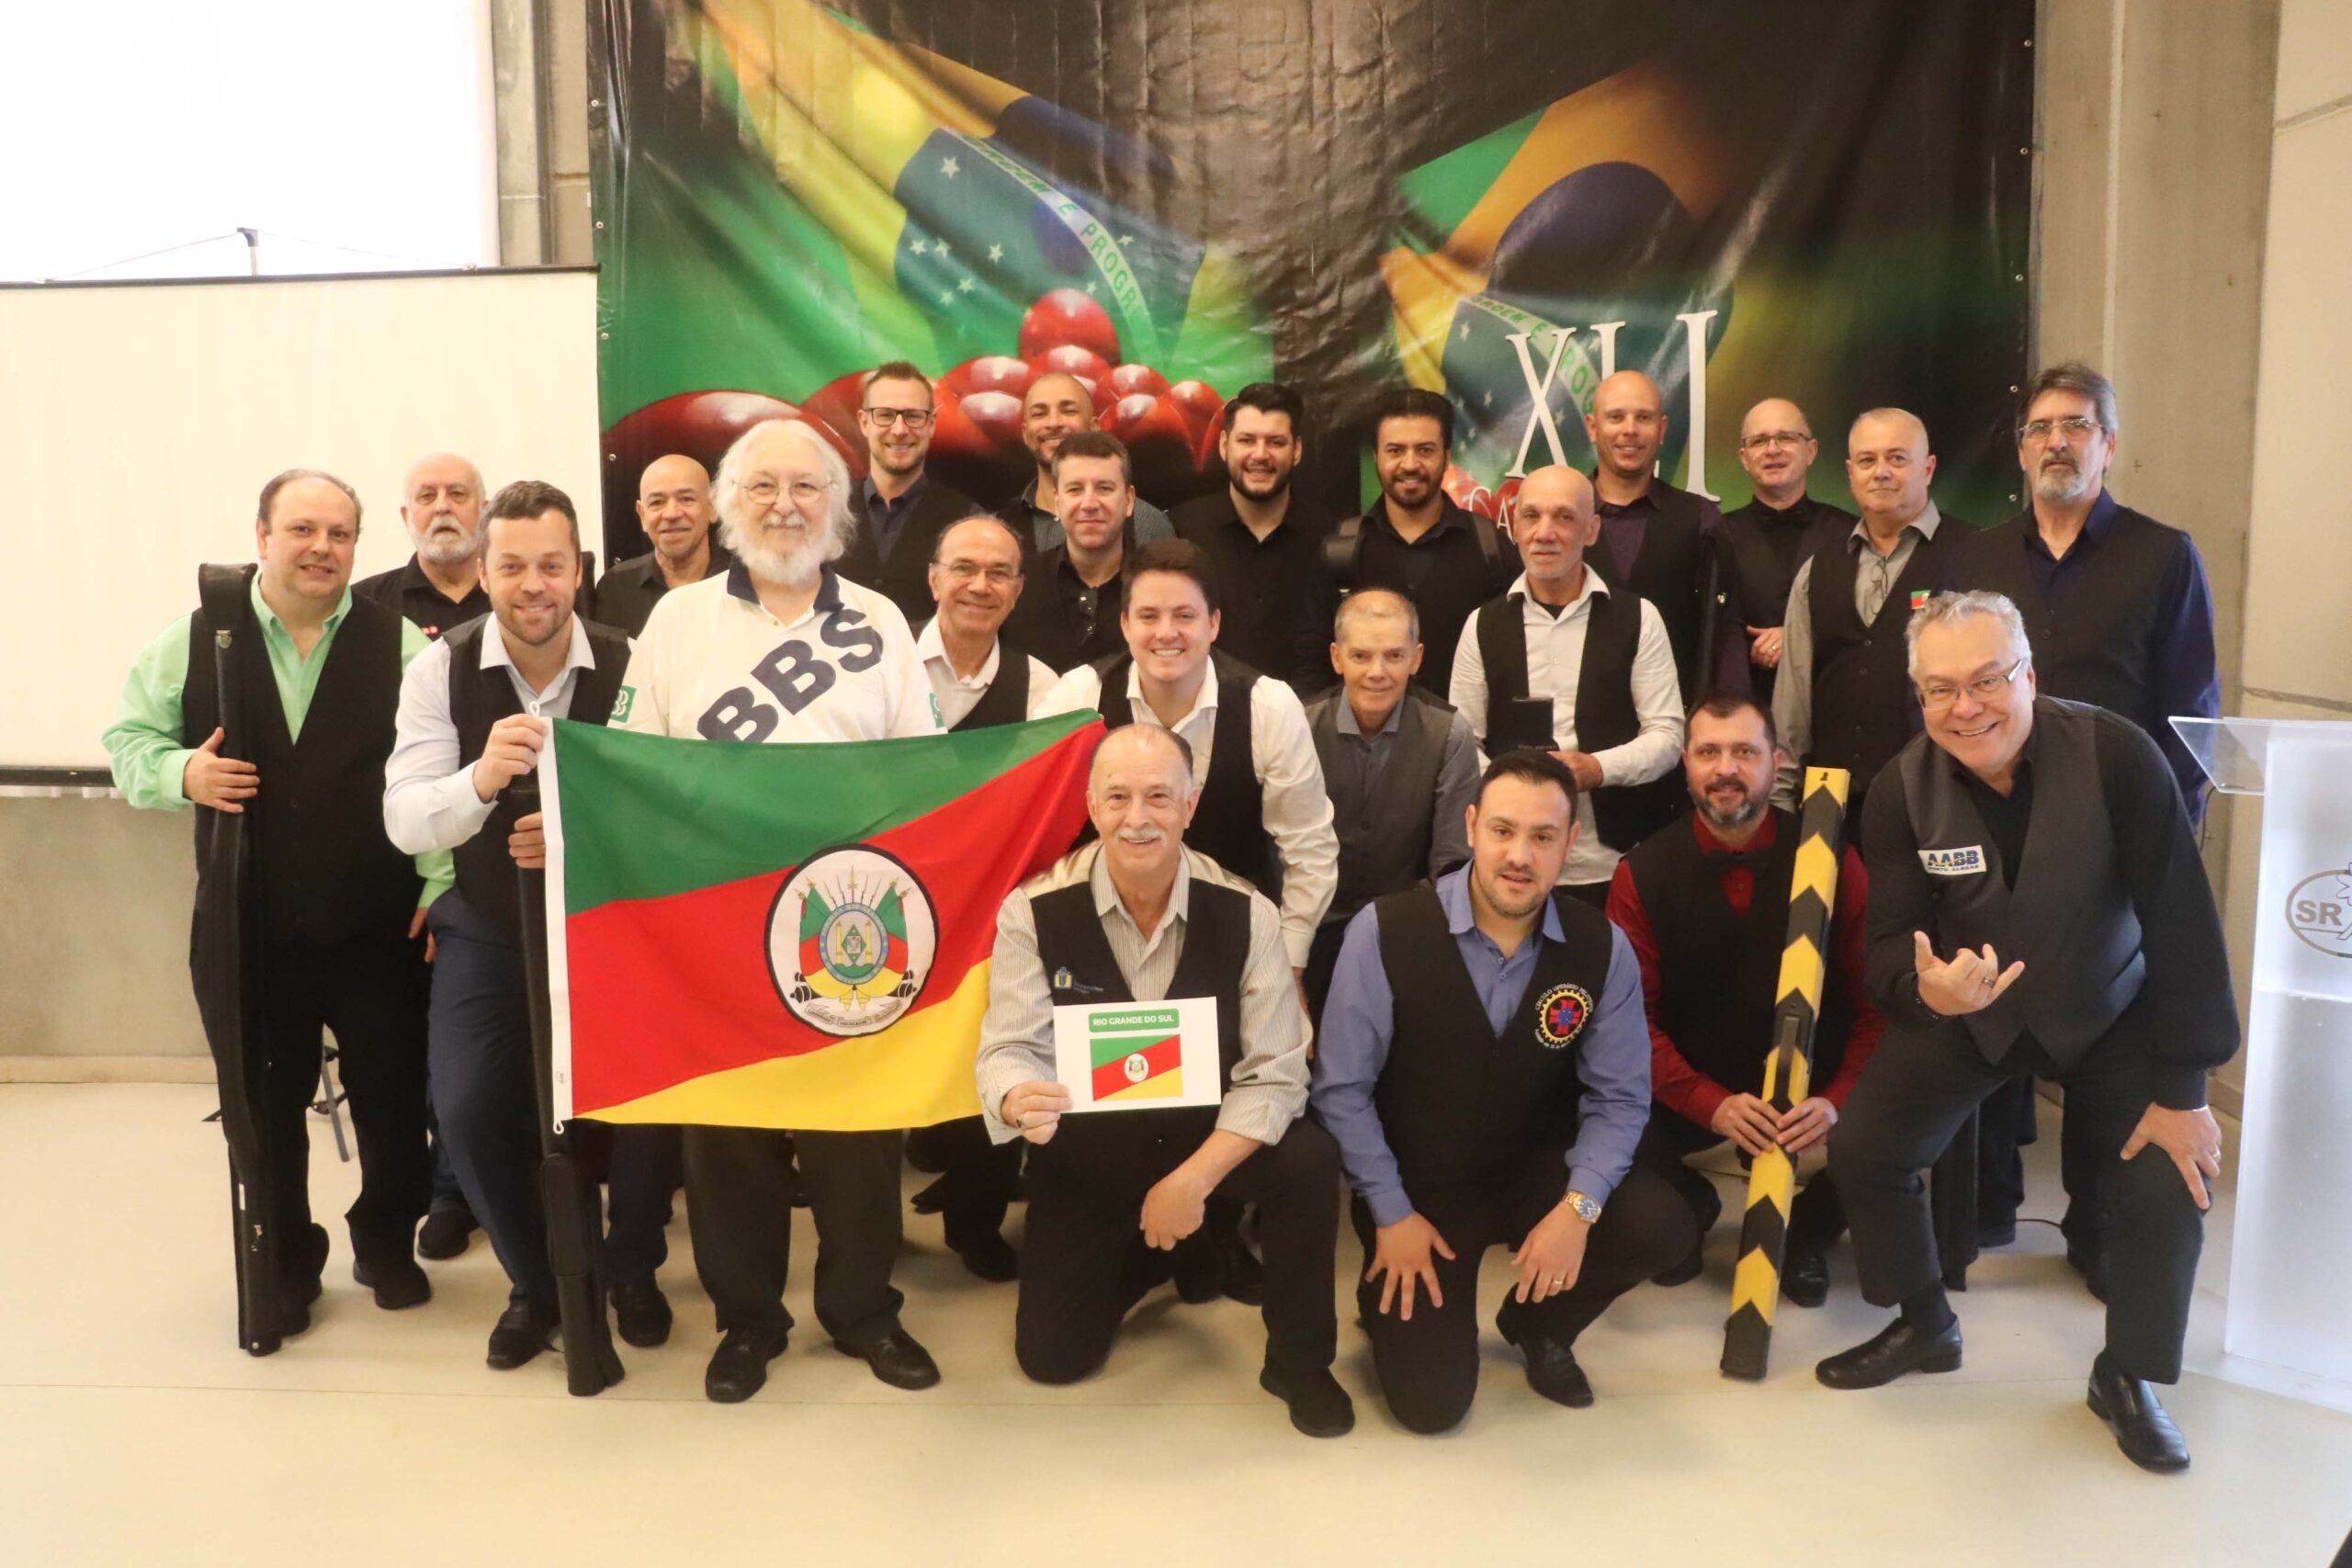 Inicia o 41º Campeonato Brasileiro de Sinuca no Mampituba - Mampituba